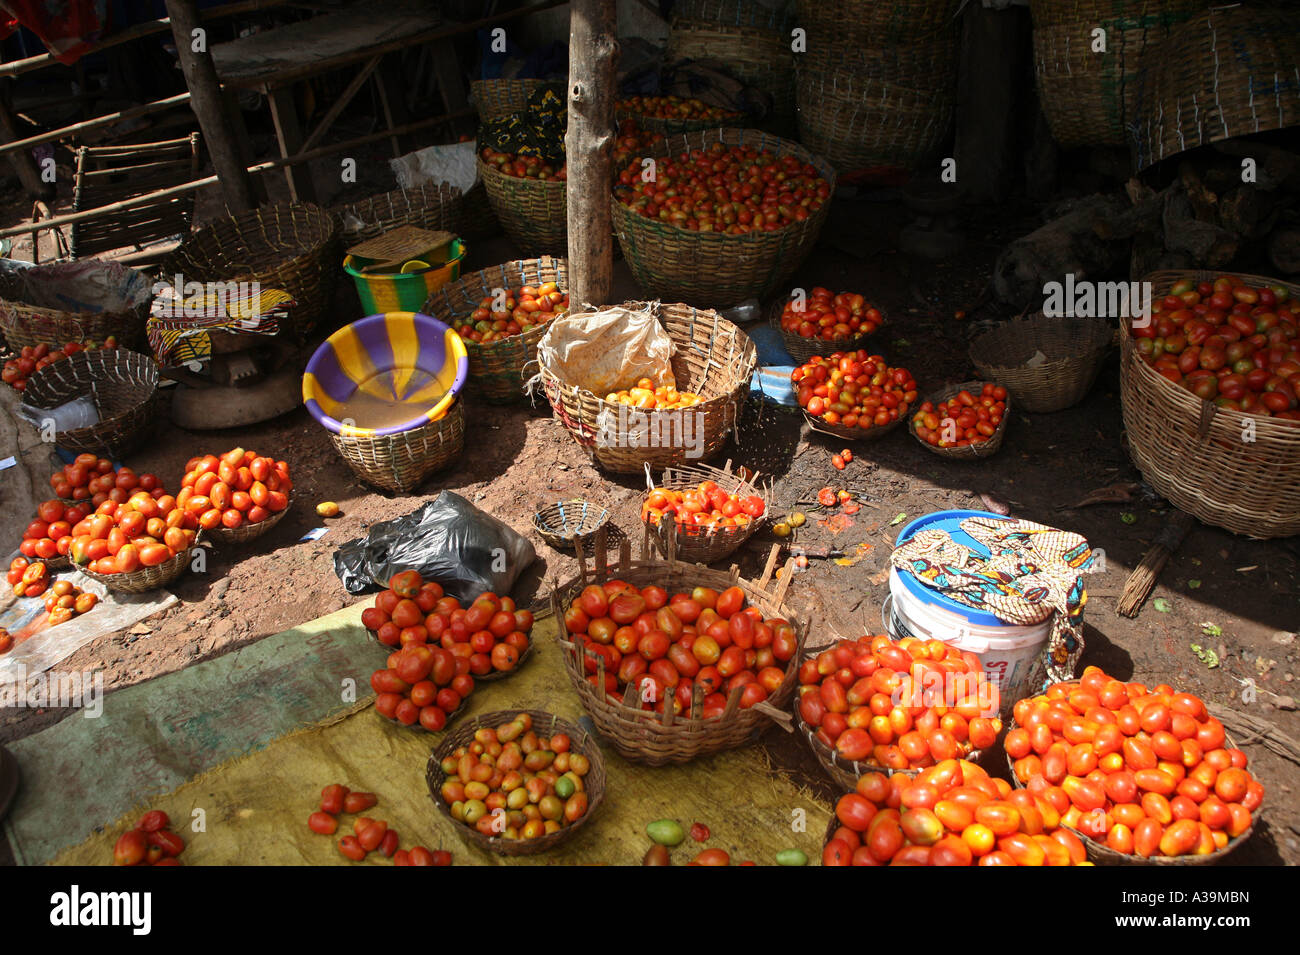 Un étal de tomates dans un marché local BAMAKO Mali, Afrique Banque D'Images